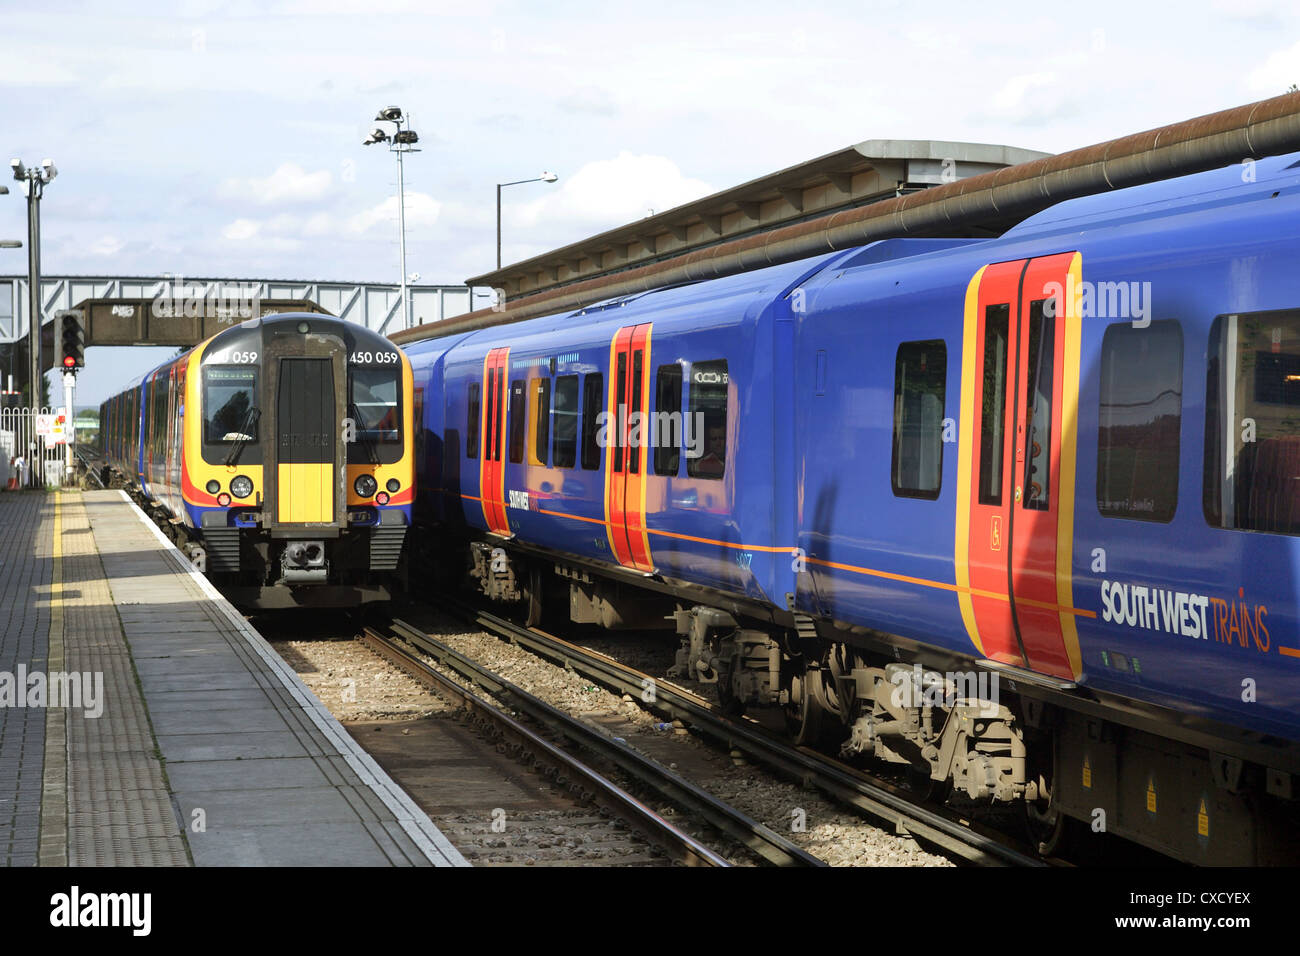 Londra, il sud ovest di treni è un treno sta lasciando una stazione Foto Stock